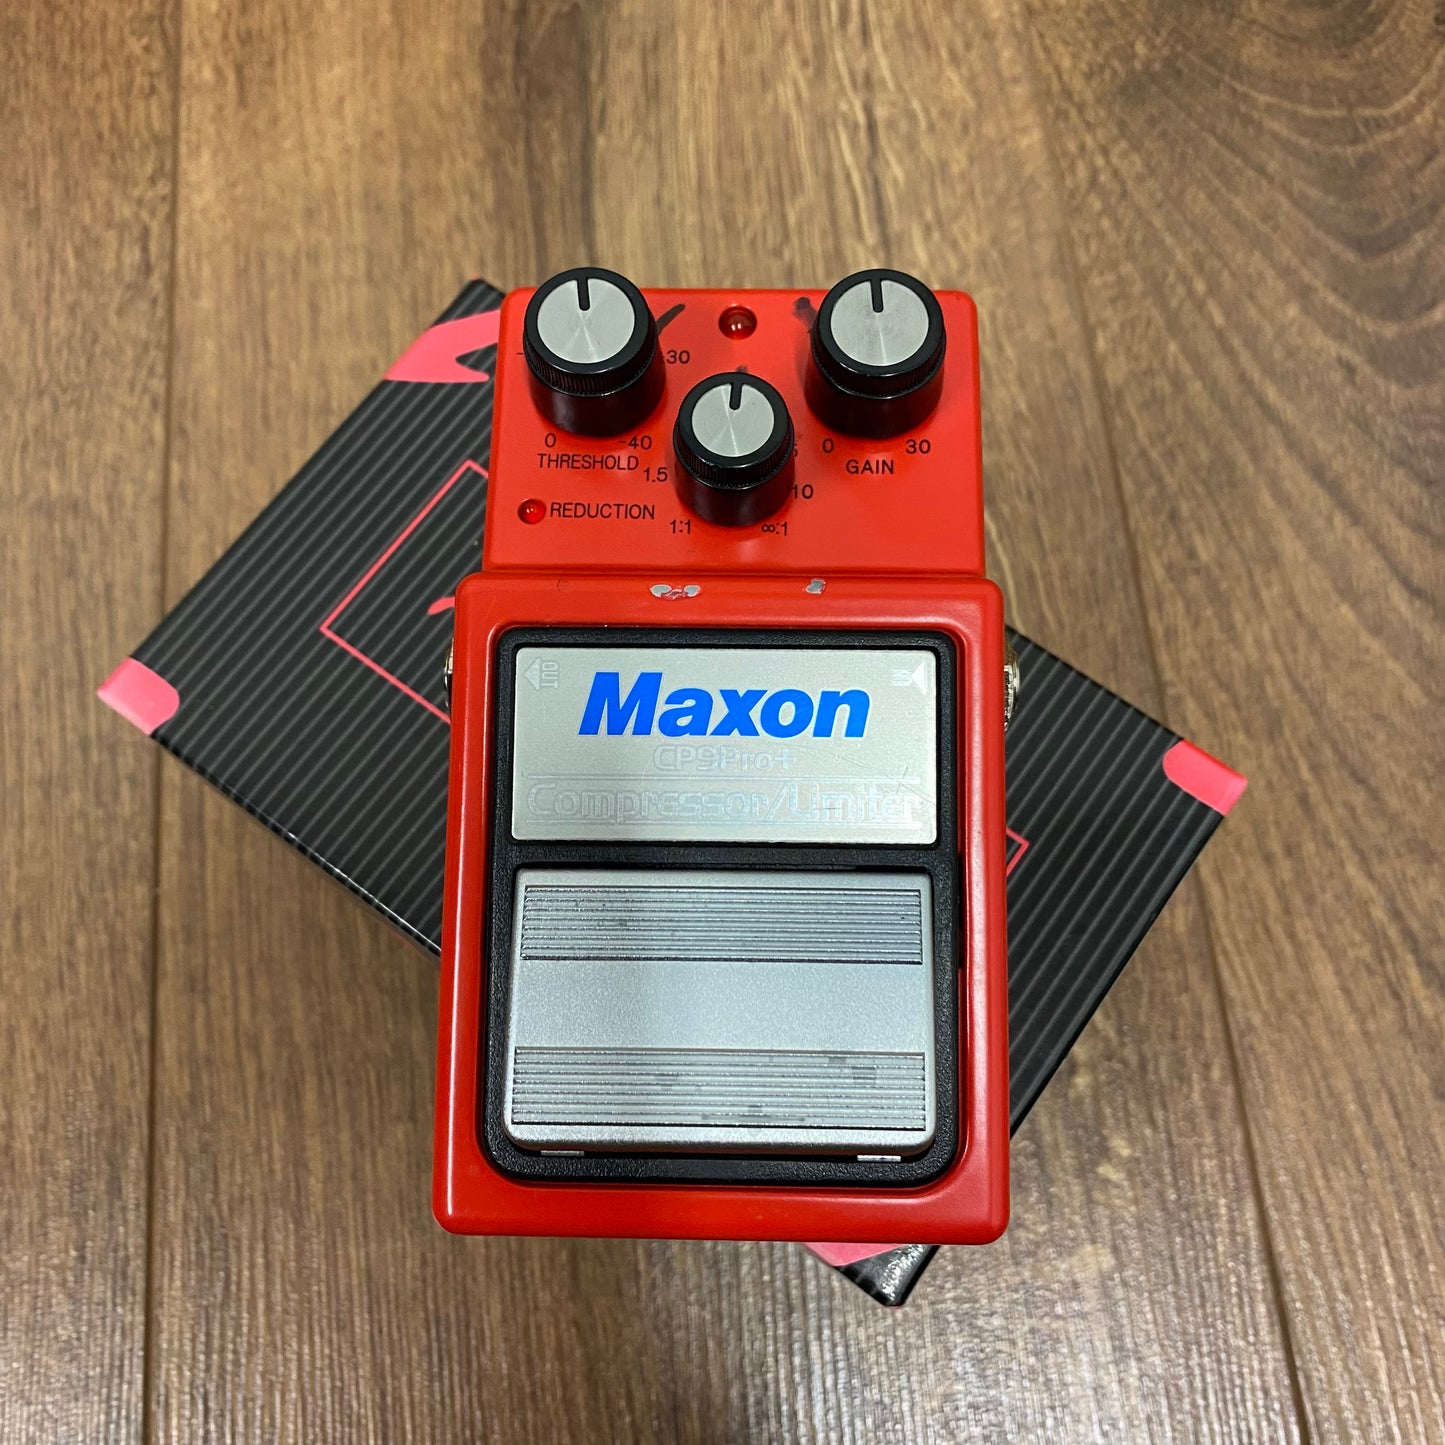 Pre-Owned Maxon CP-9 Pro+ Compressor Pedal